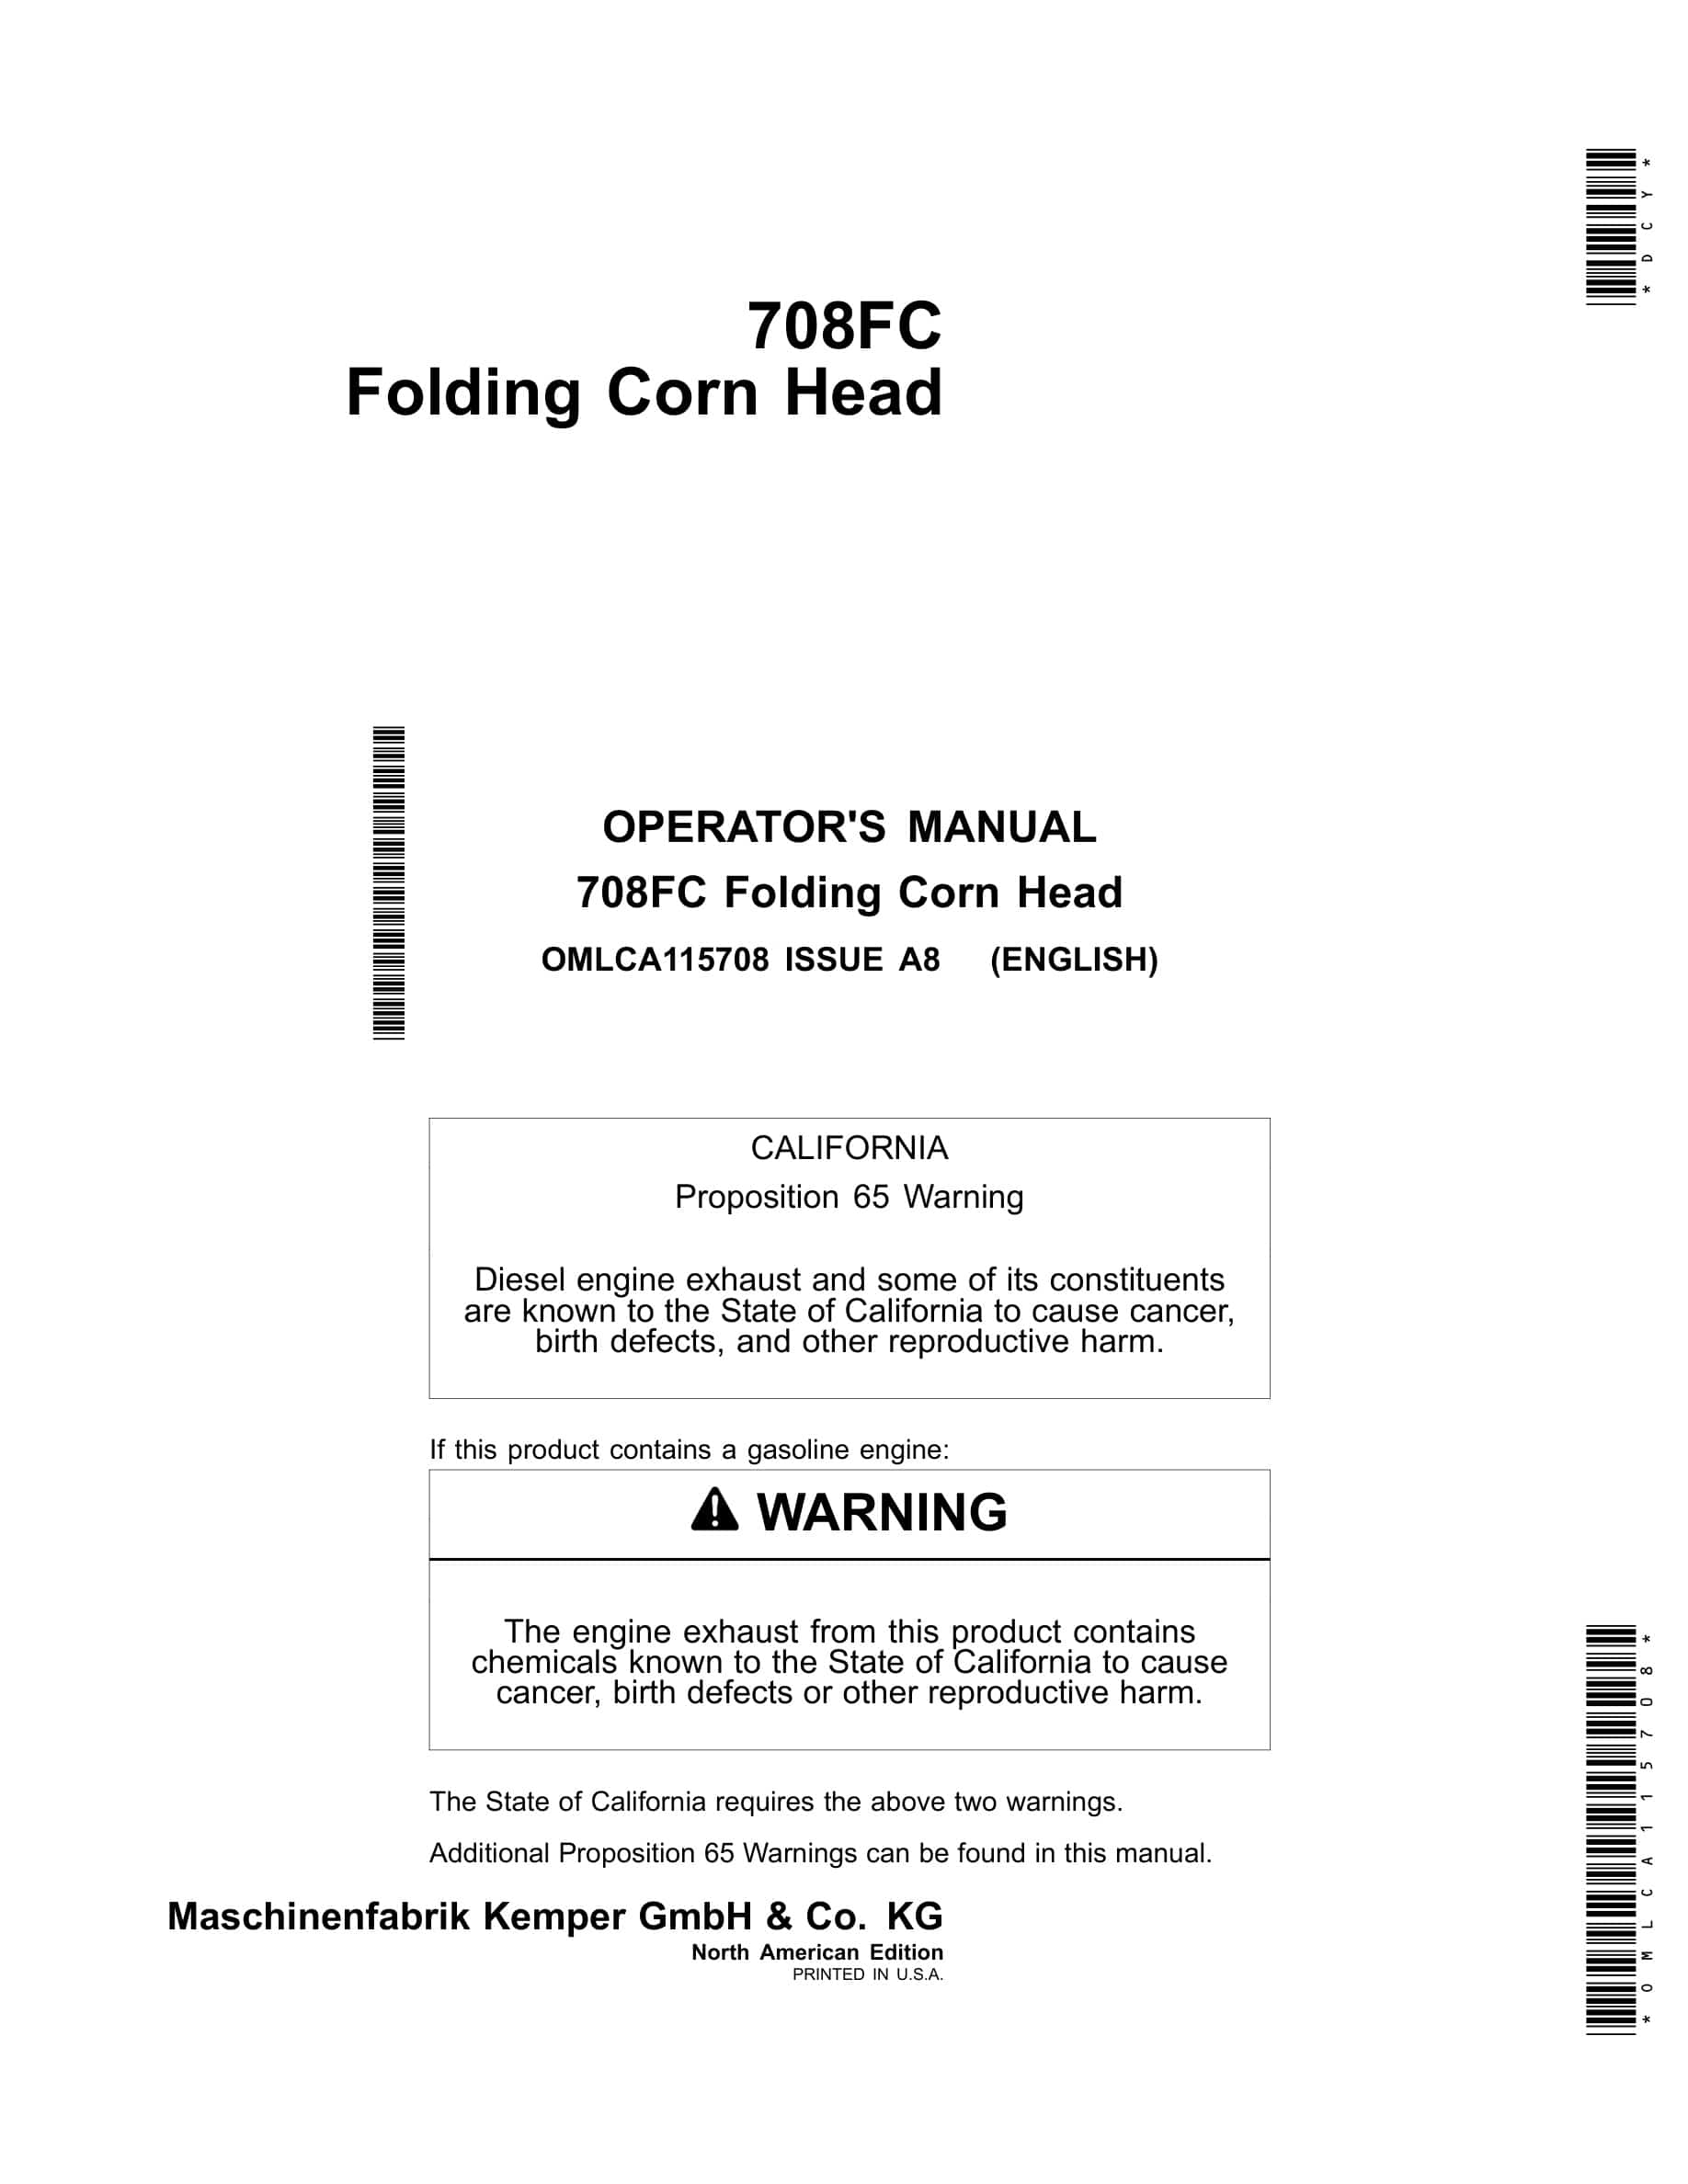 John Deere 708FC Folding Corn Head Operator Manual OMLCA115708-1